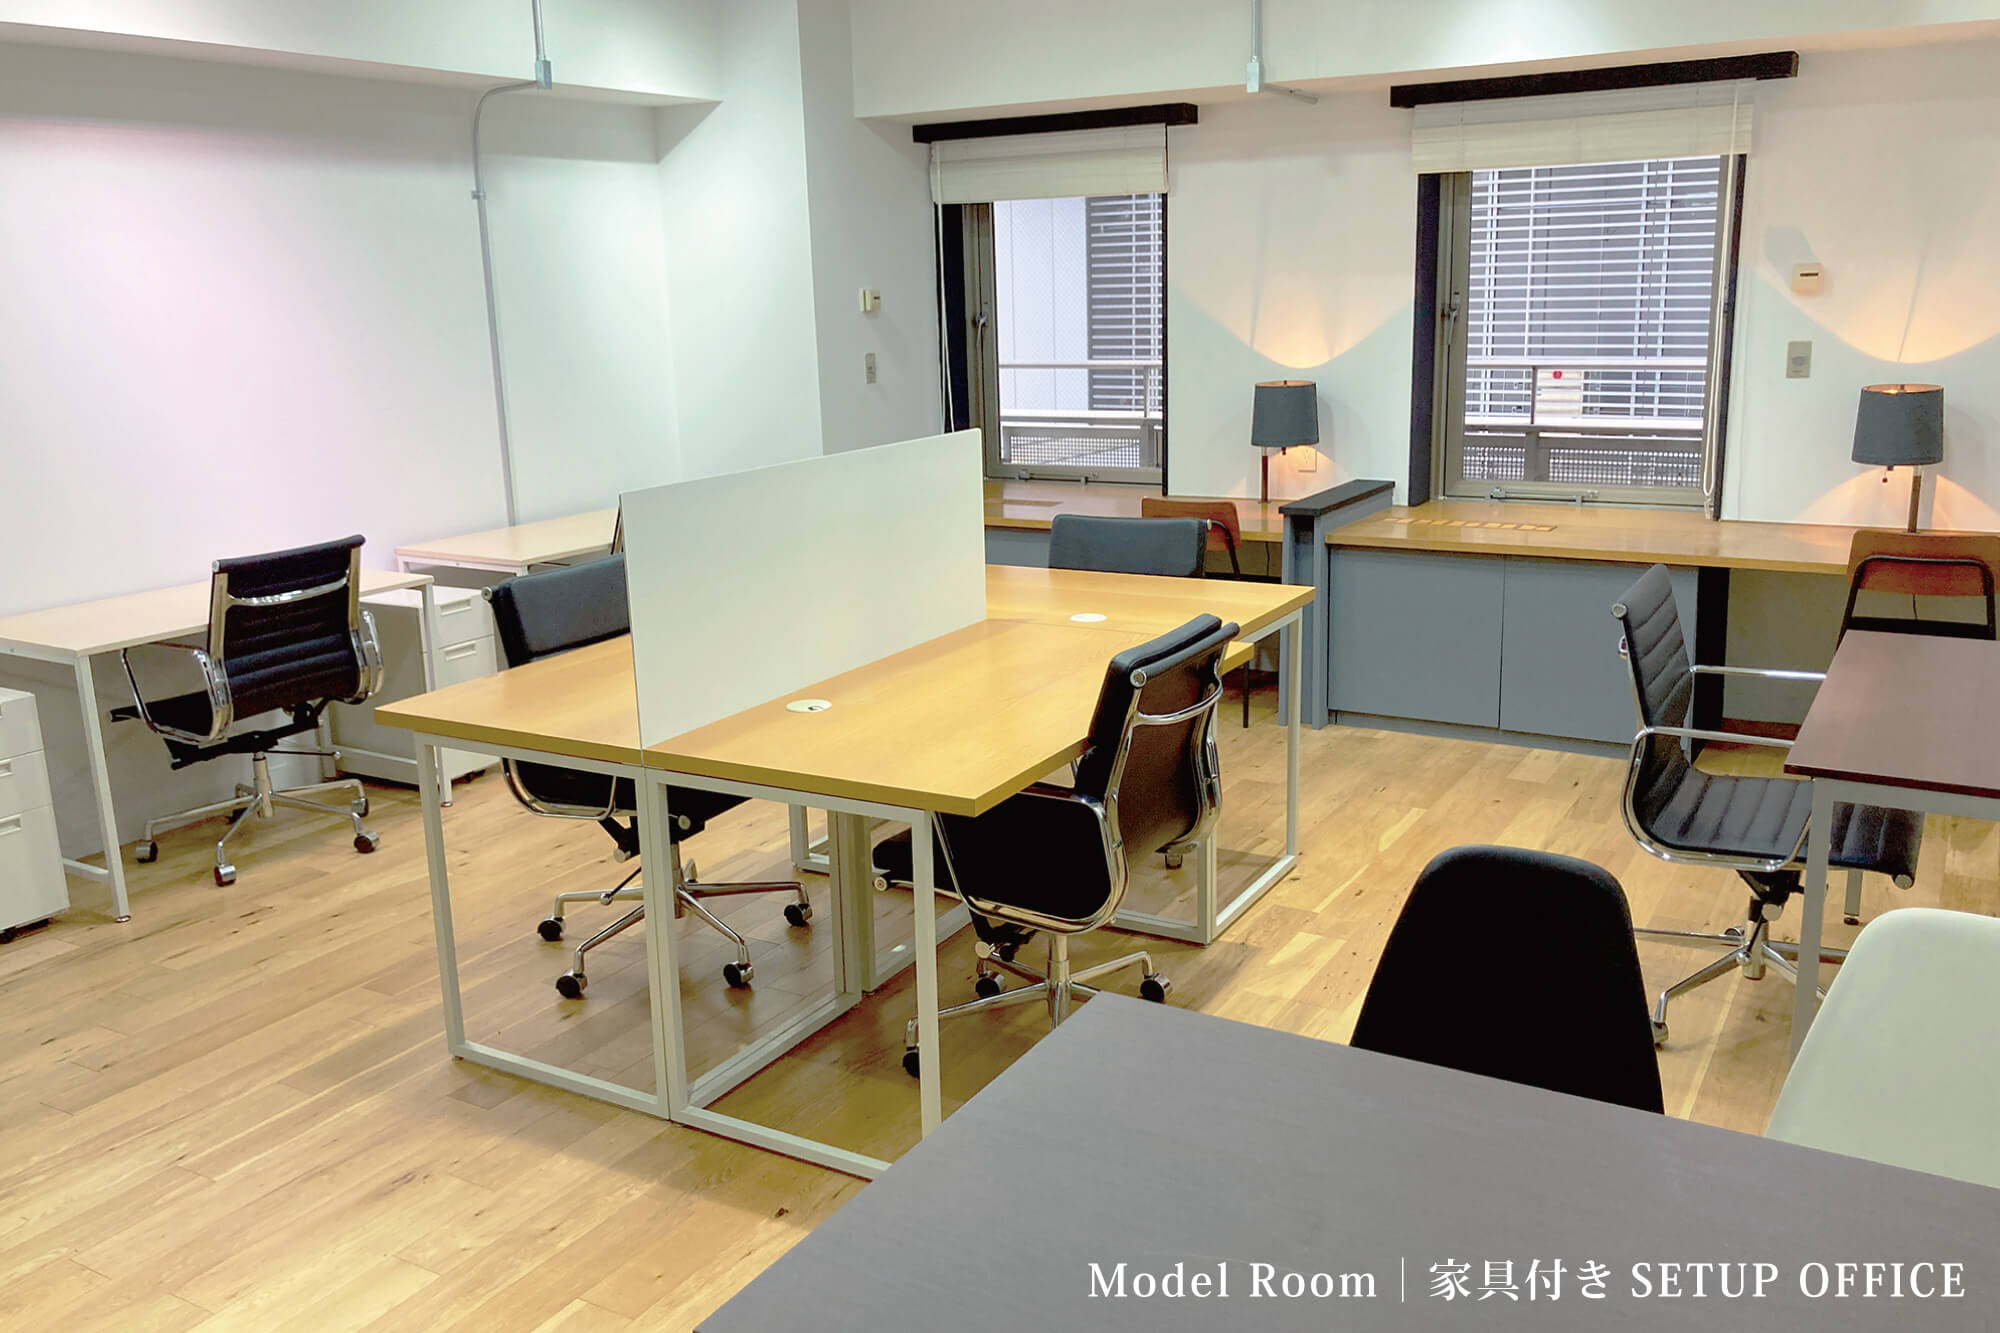 310 Setup office | Model Room　35.14㎡／10.62坪　床：フローリング　天井：スケルトン